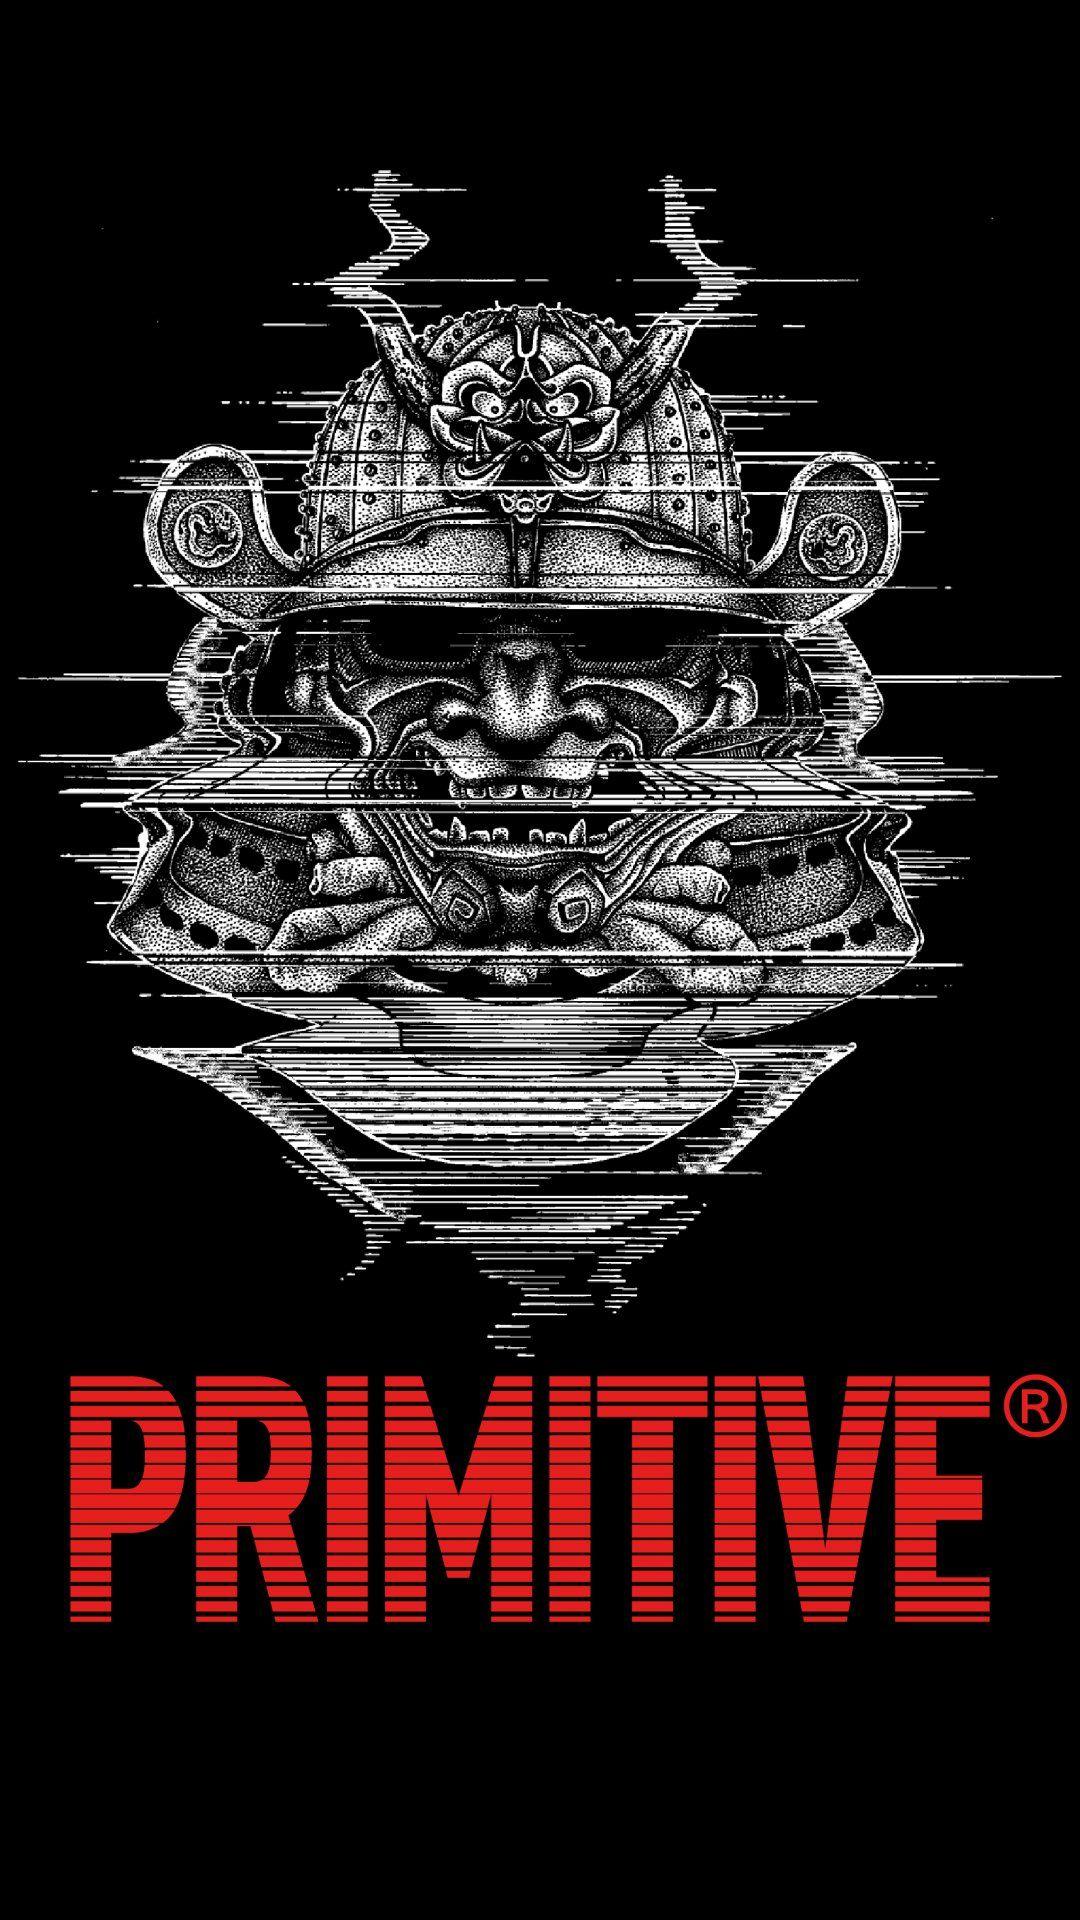 Primitive Brand Logo - Wallpaper